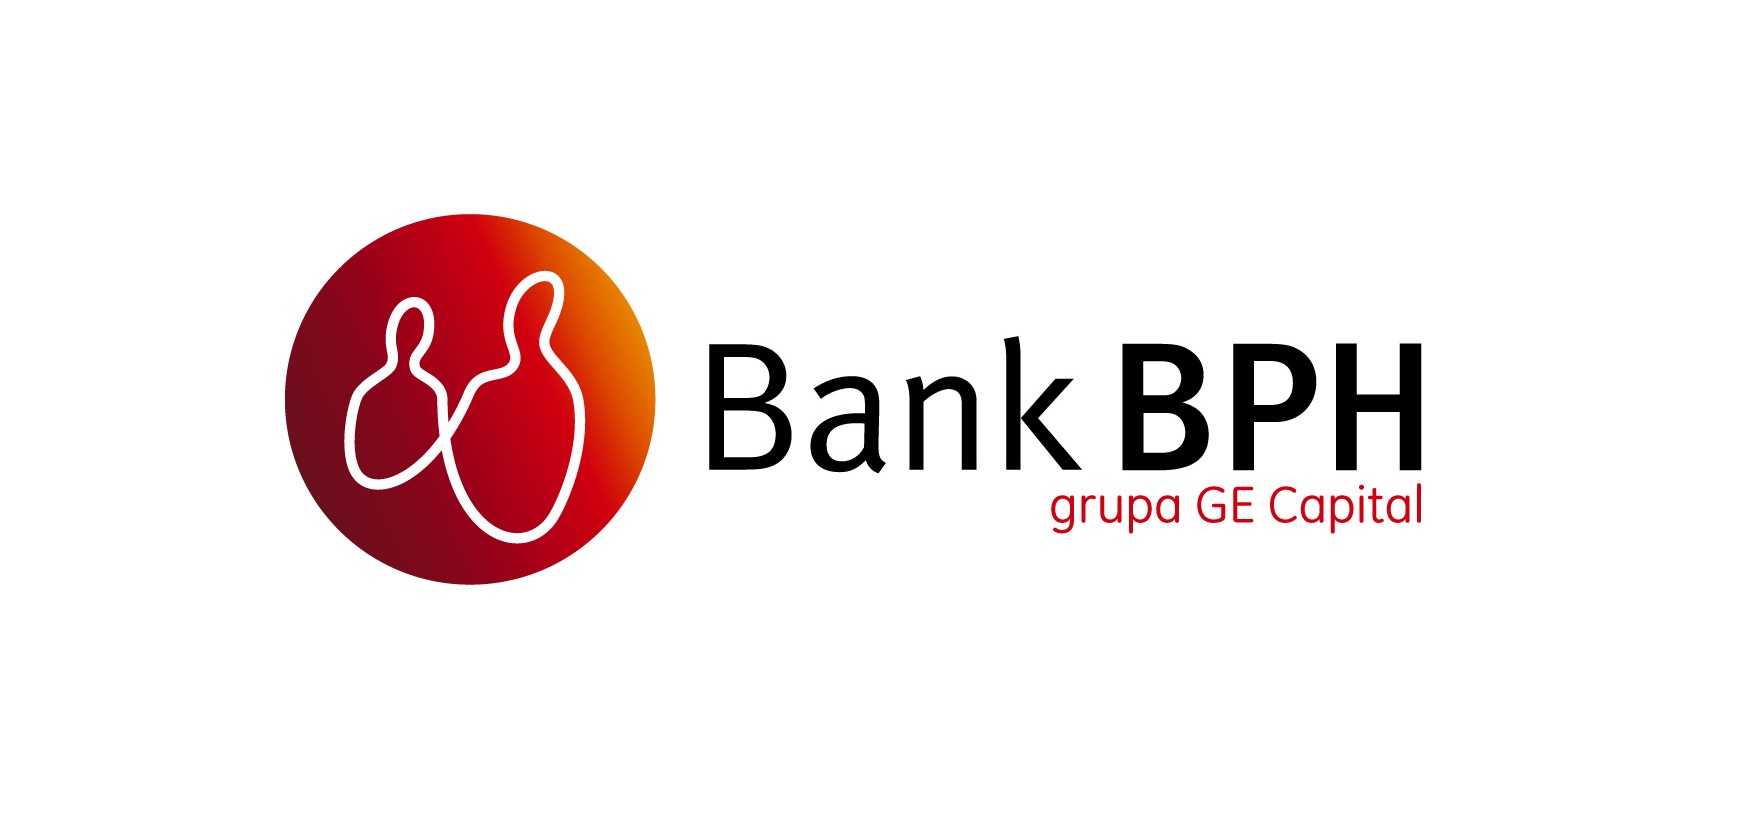 banki/bph_logo.jpg